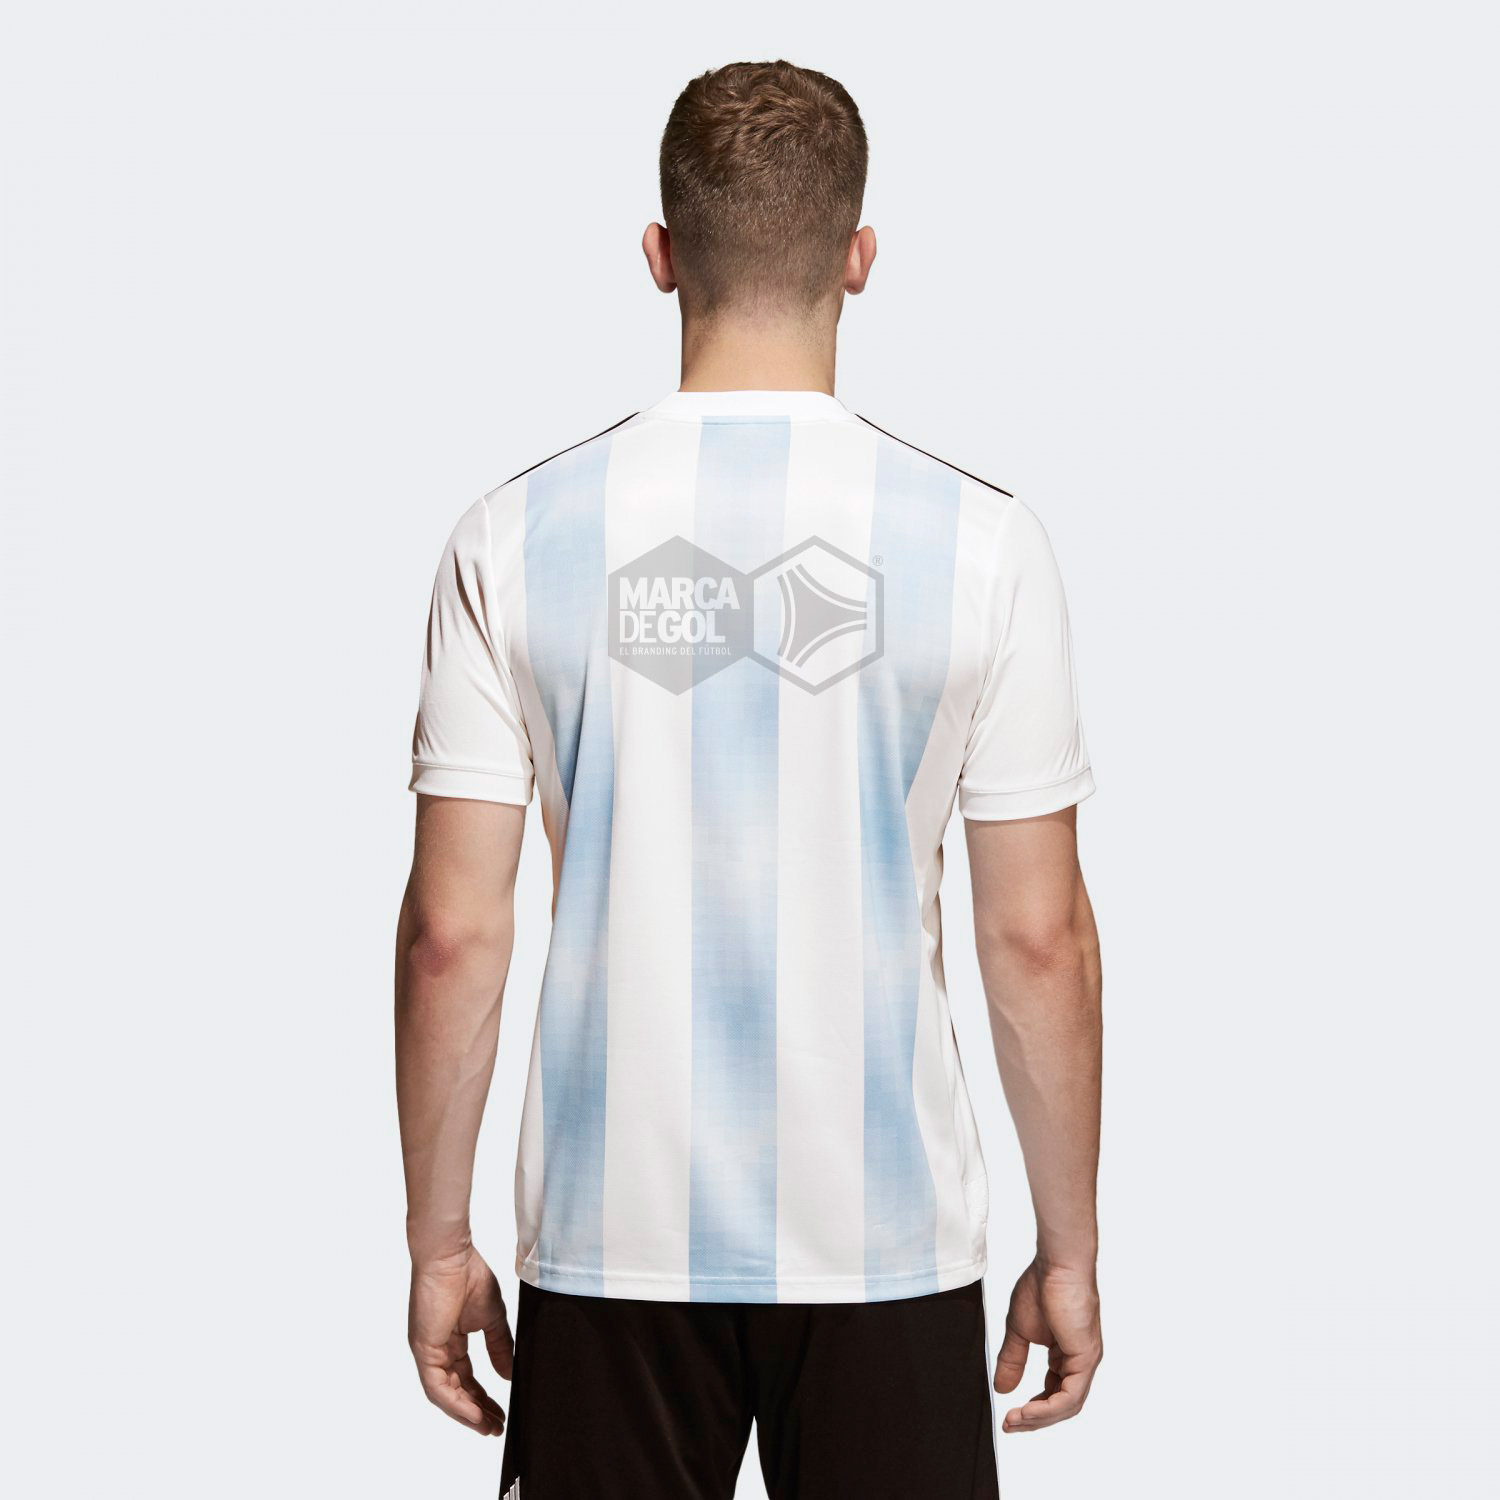 http://marcadegol.com/fotos/2017/10/camiseta-argentina-mundial-2018_03.jpg